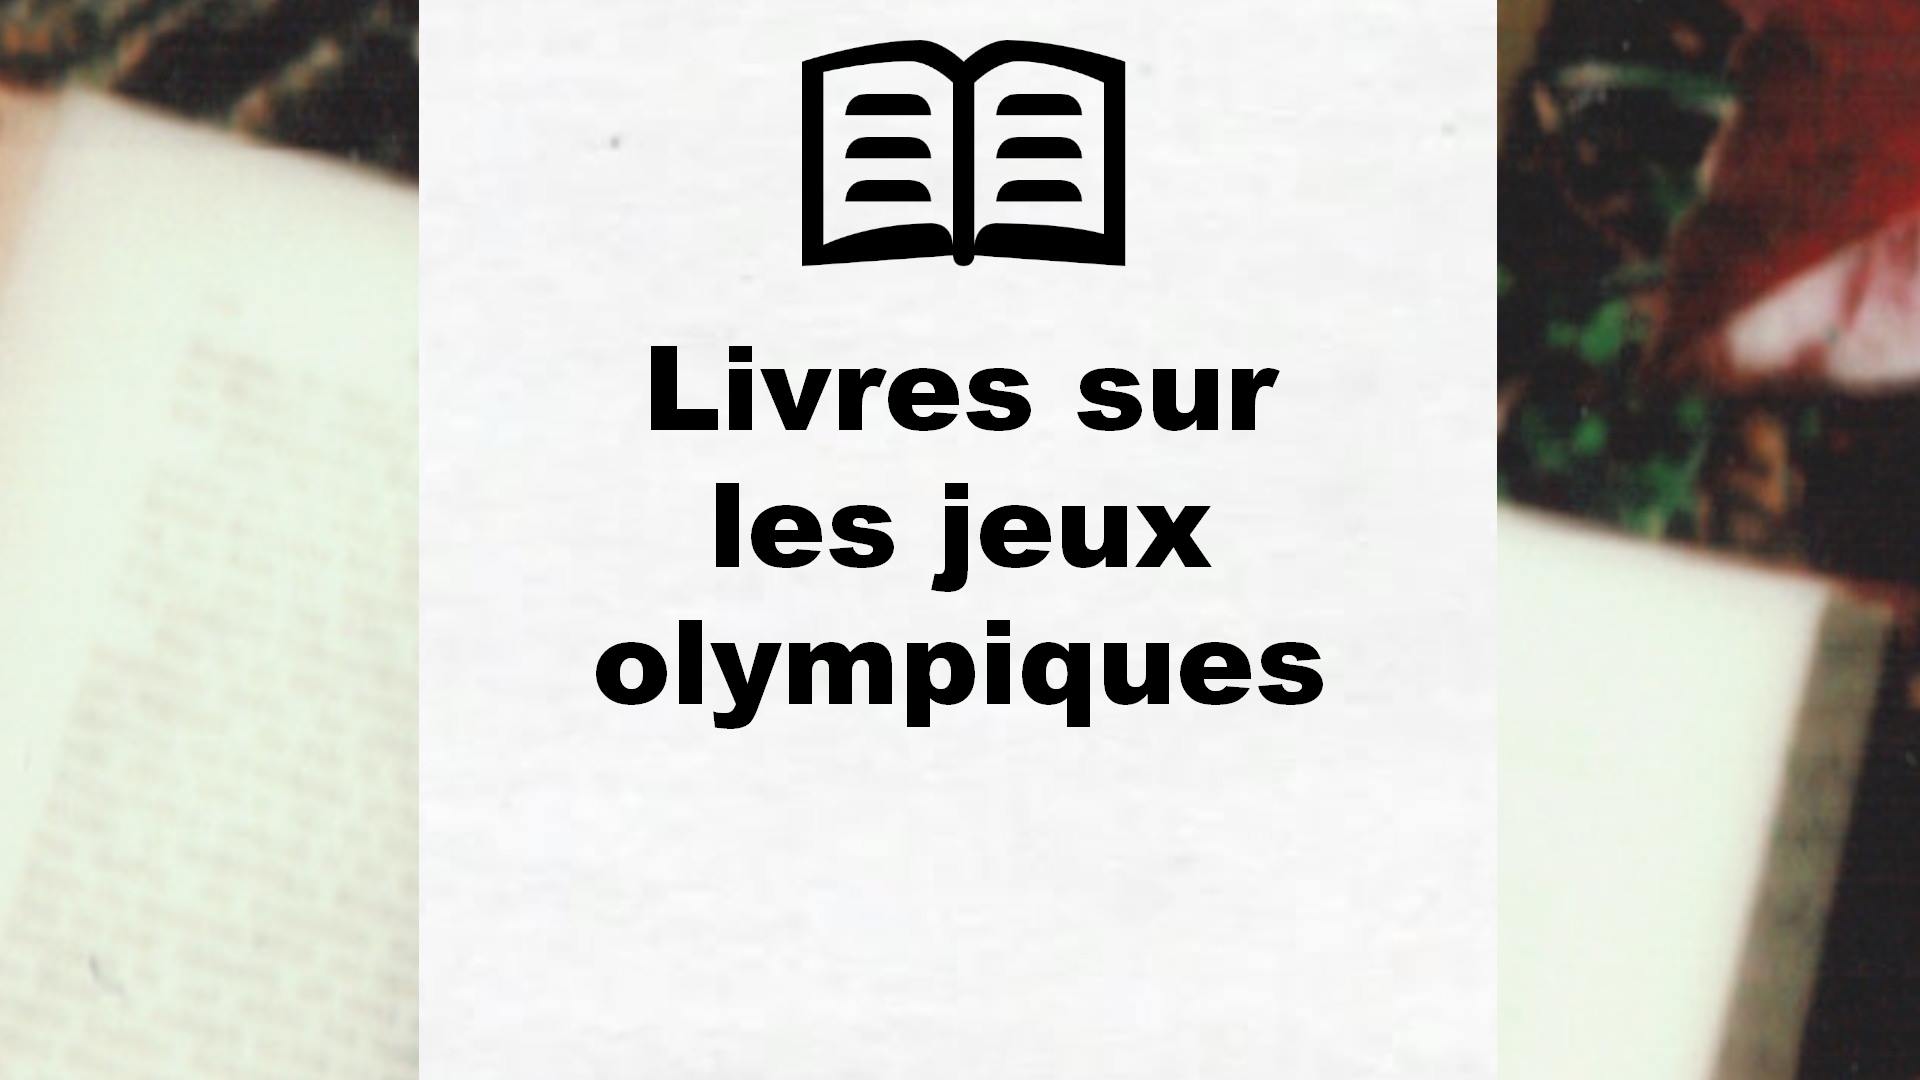 Livres sur les jeux olympiques